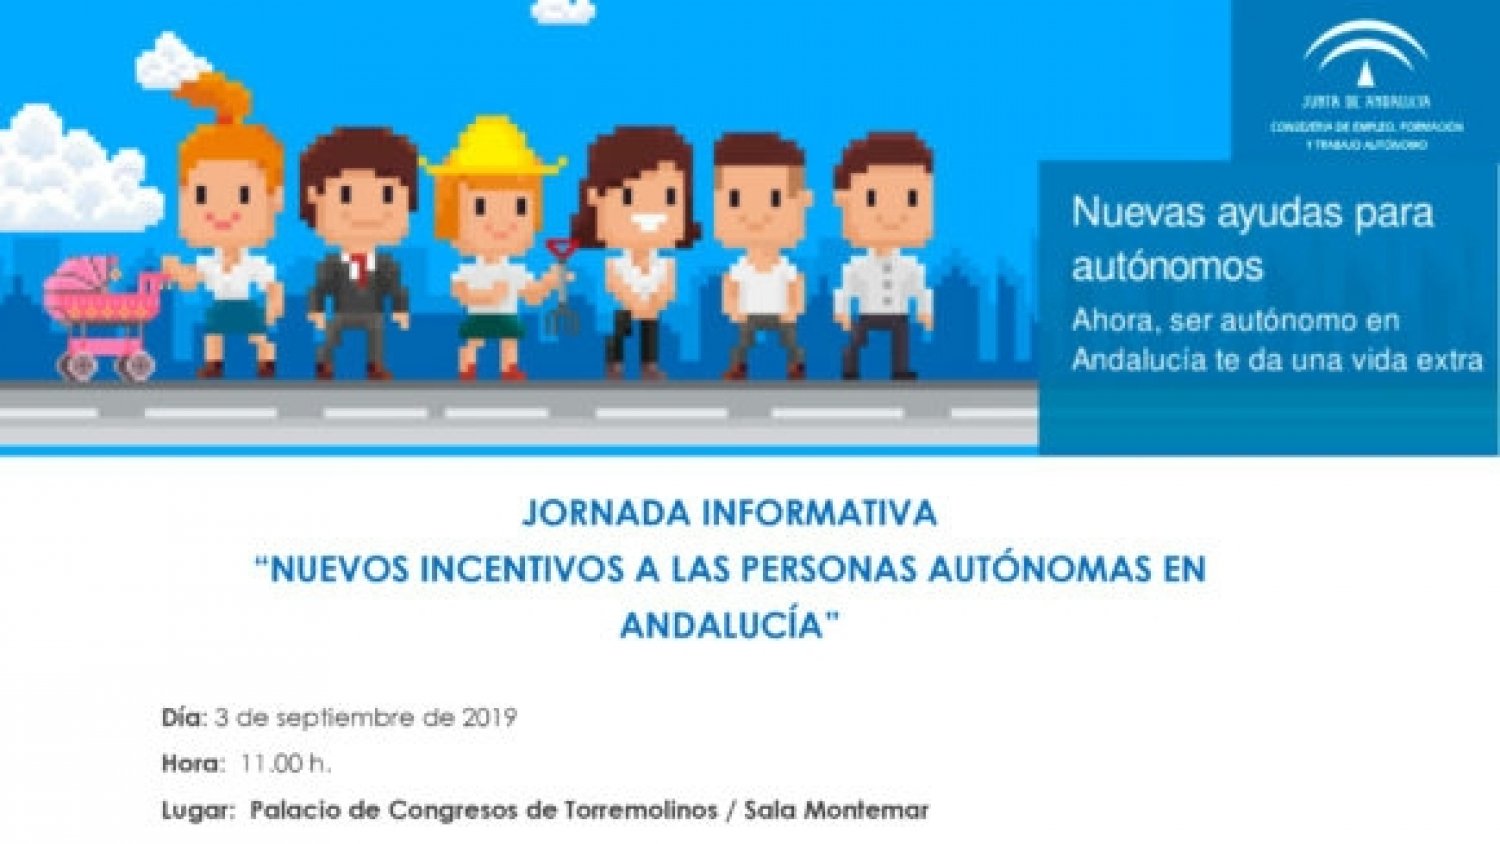 El CADE de Torremolinos celebrará una jornada informativa sobre los nuevos incentivos a los autónomos de Andalucía el 3 de septiembre